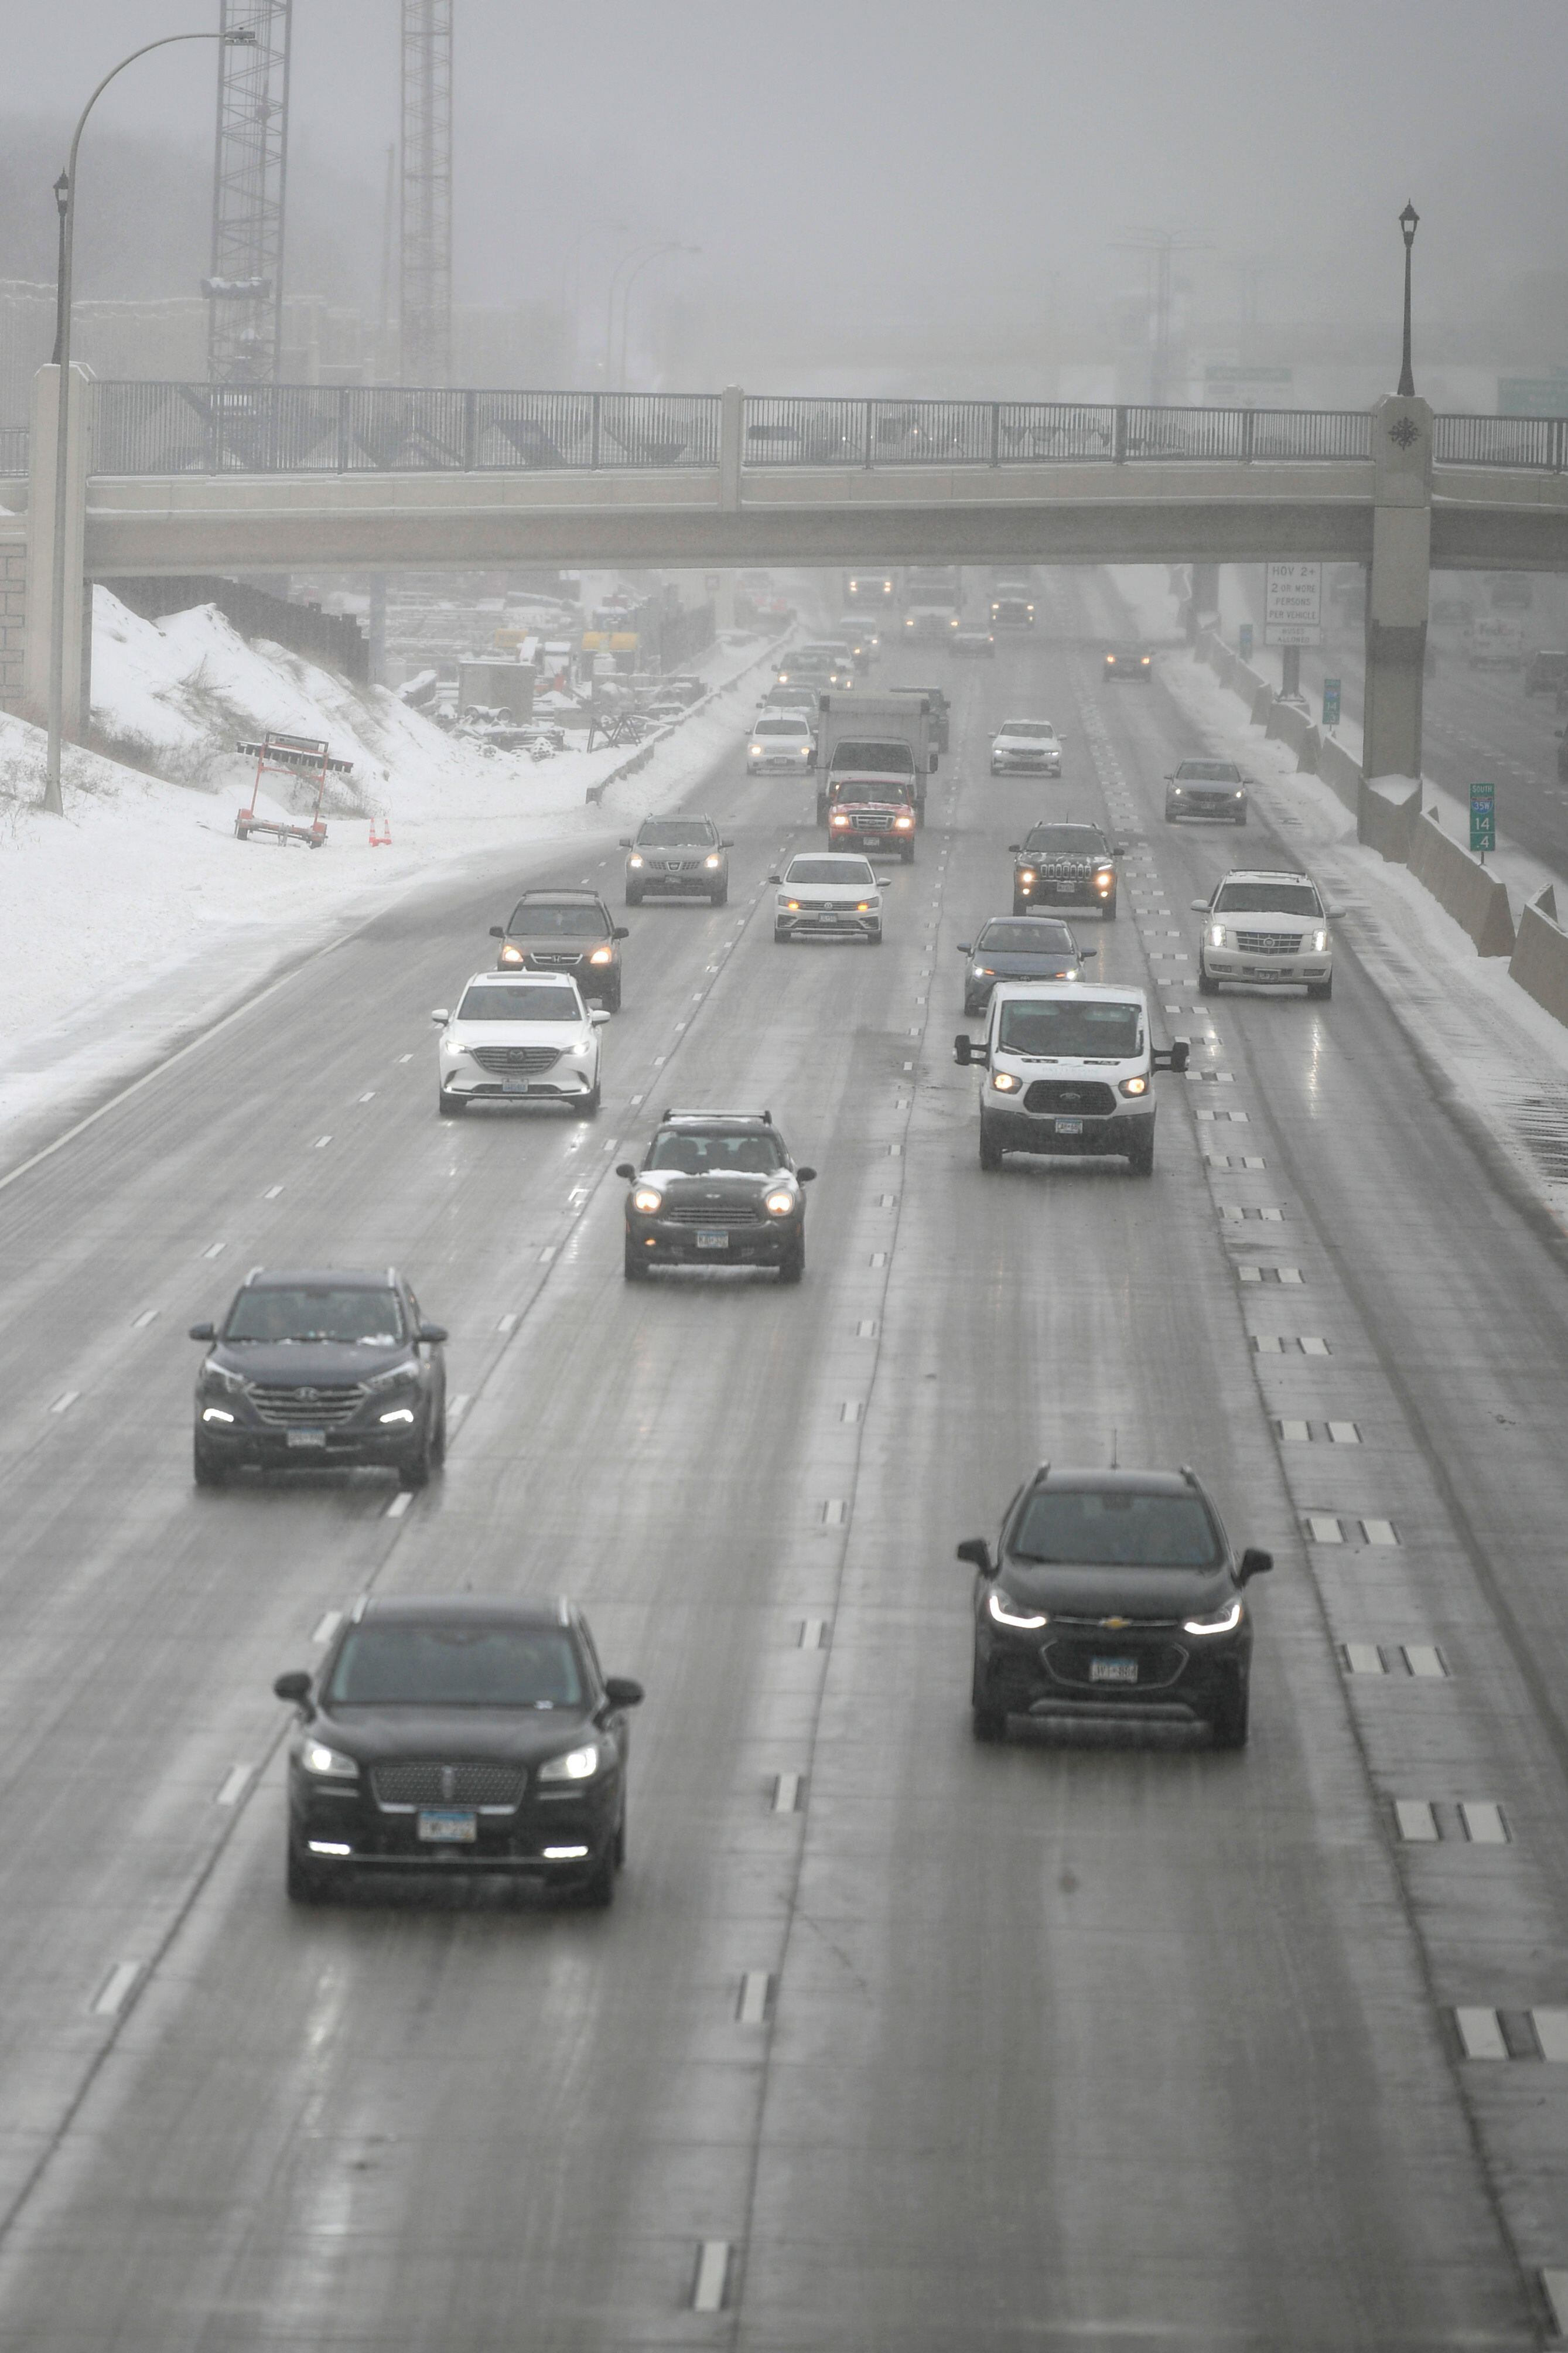 El tráfico se mueve en la carretera interestatal 35W durante una tormenta de nieve en Minneapolis, Minnesota, el 22 de febrero de 2023. Poderosas tormentas invernales azotaron los Estados Unidos el miércoles, con fuertes nevadas que atravesaron amplias áreas, incluso cuando se esperaba un calor inusual en otras.